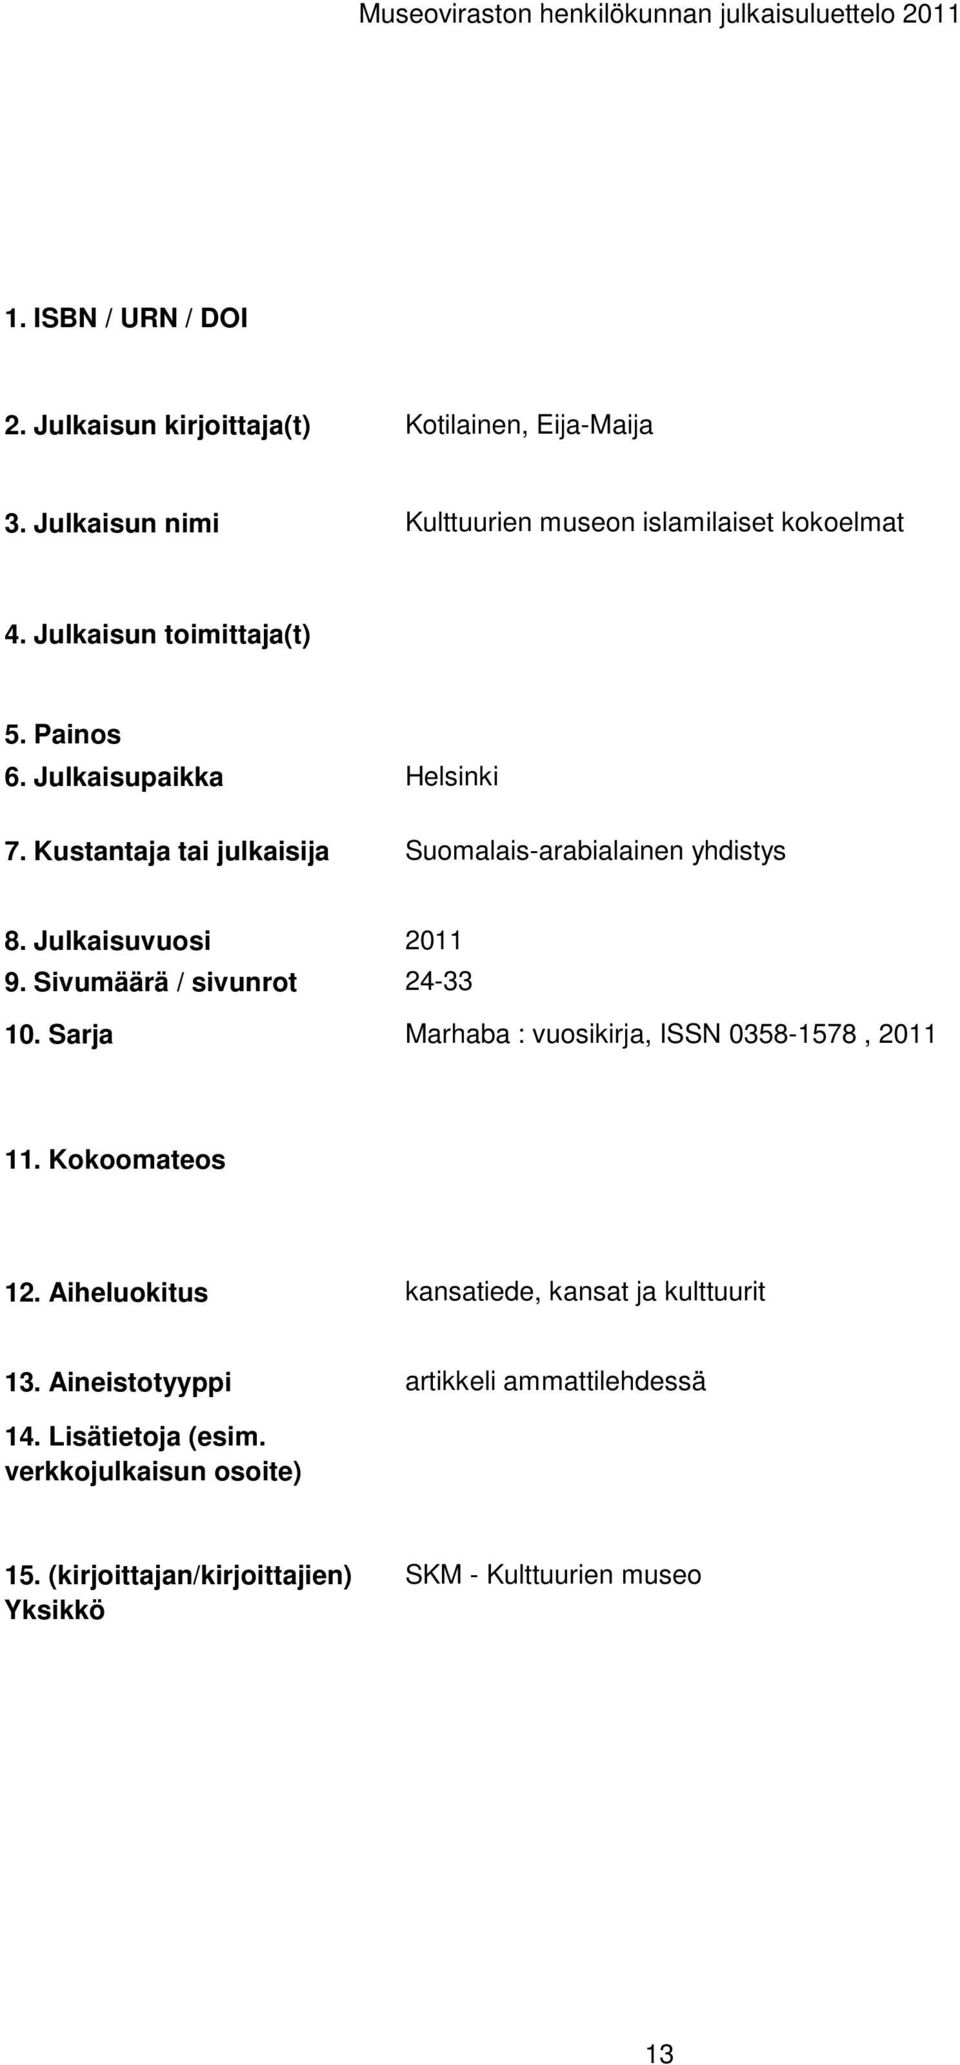 Marhaba : vuosikirja, ISSN 0358-1578, kansatiede, kansat